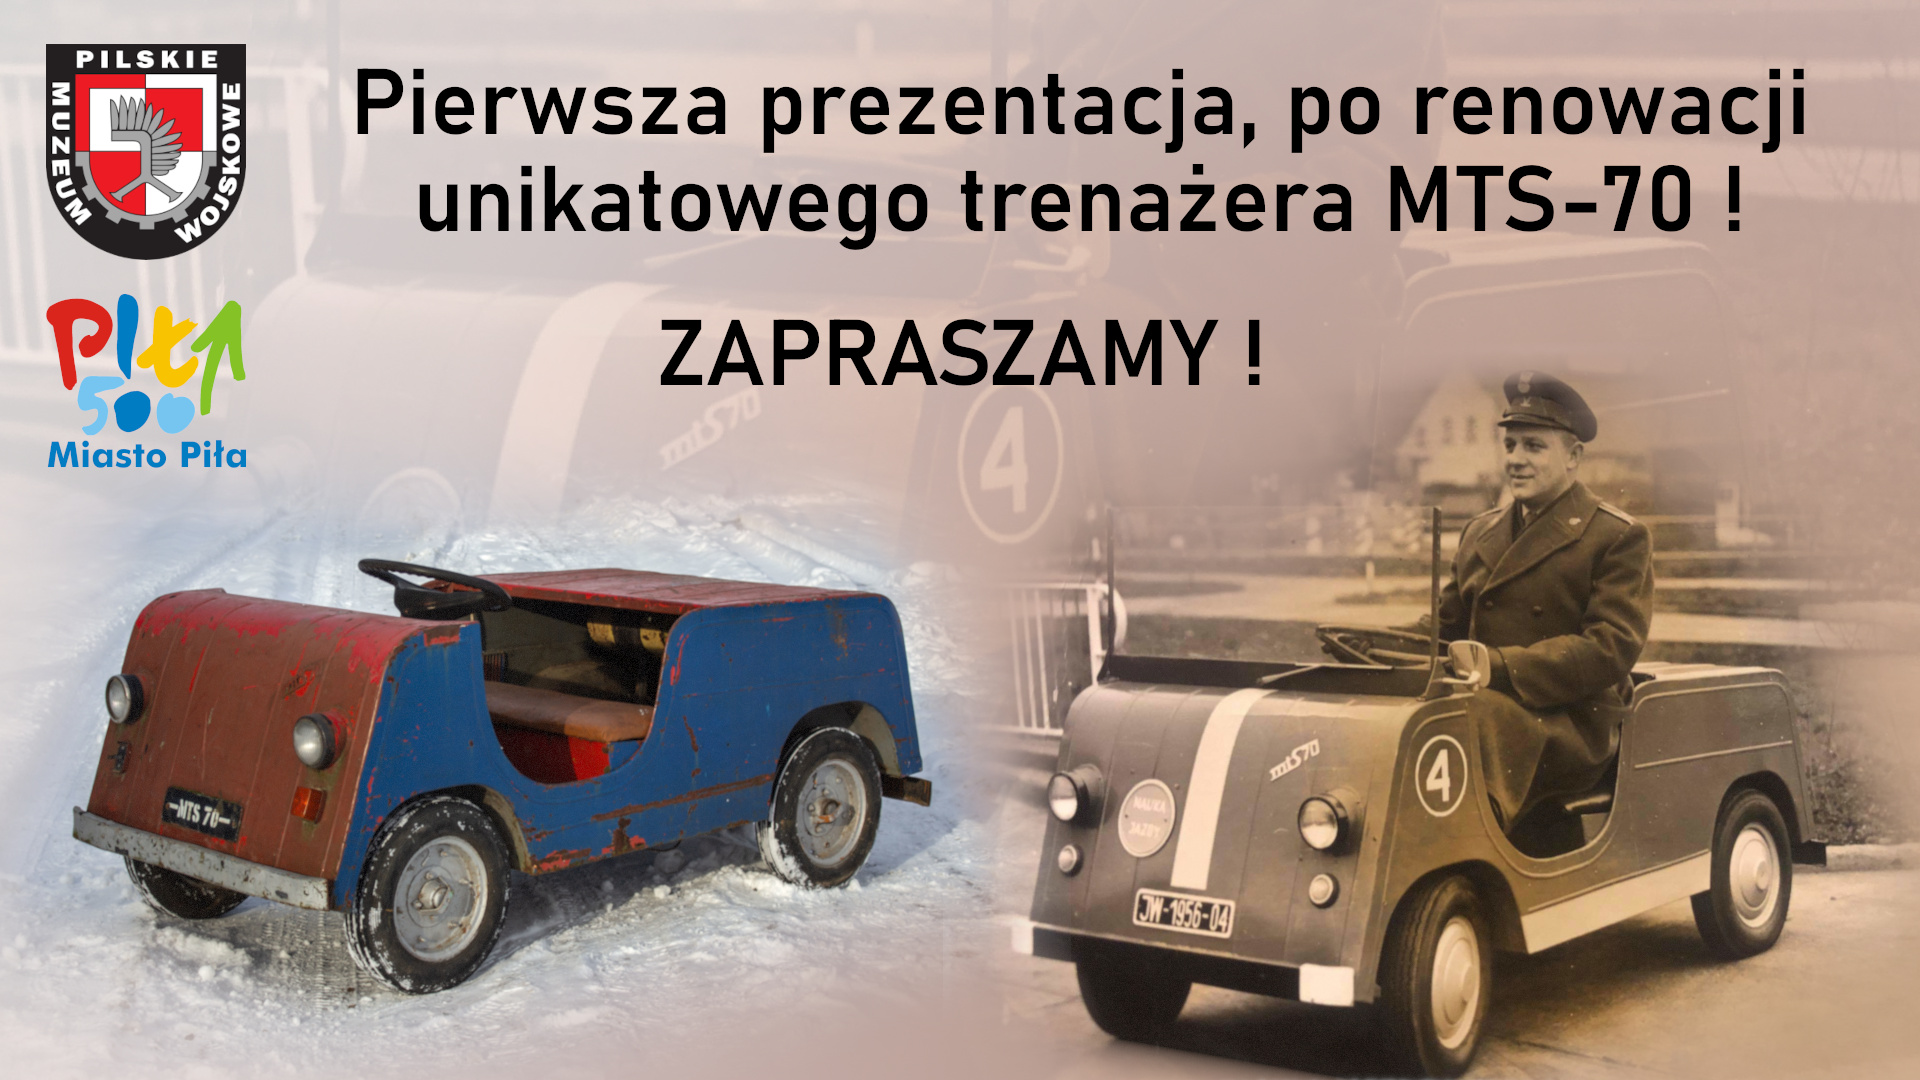 2 zdjęcia starego pojazdu wojskowego, logotyp muzeum i miasta, napis:Pierwsa prezentacja po renowacji unikatowego trenażera MTS-70! 